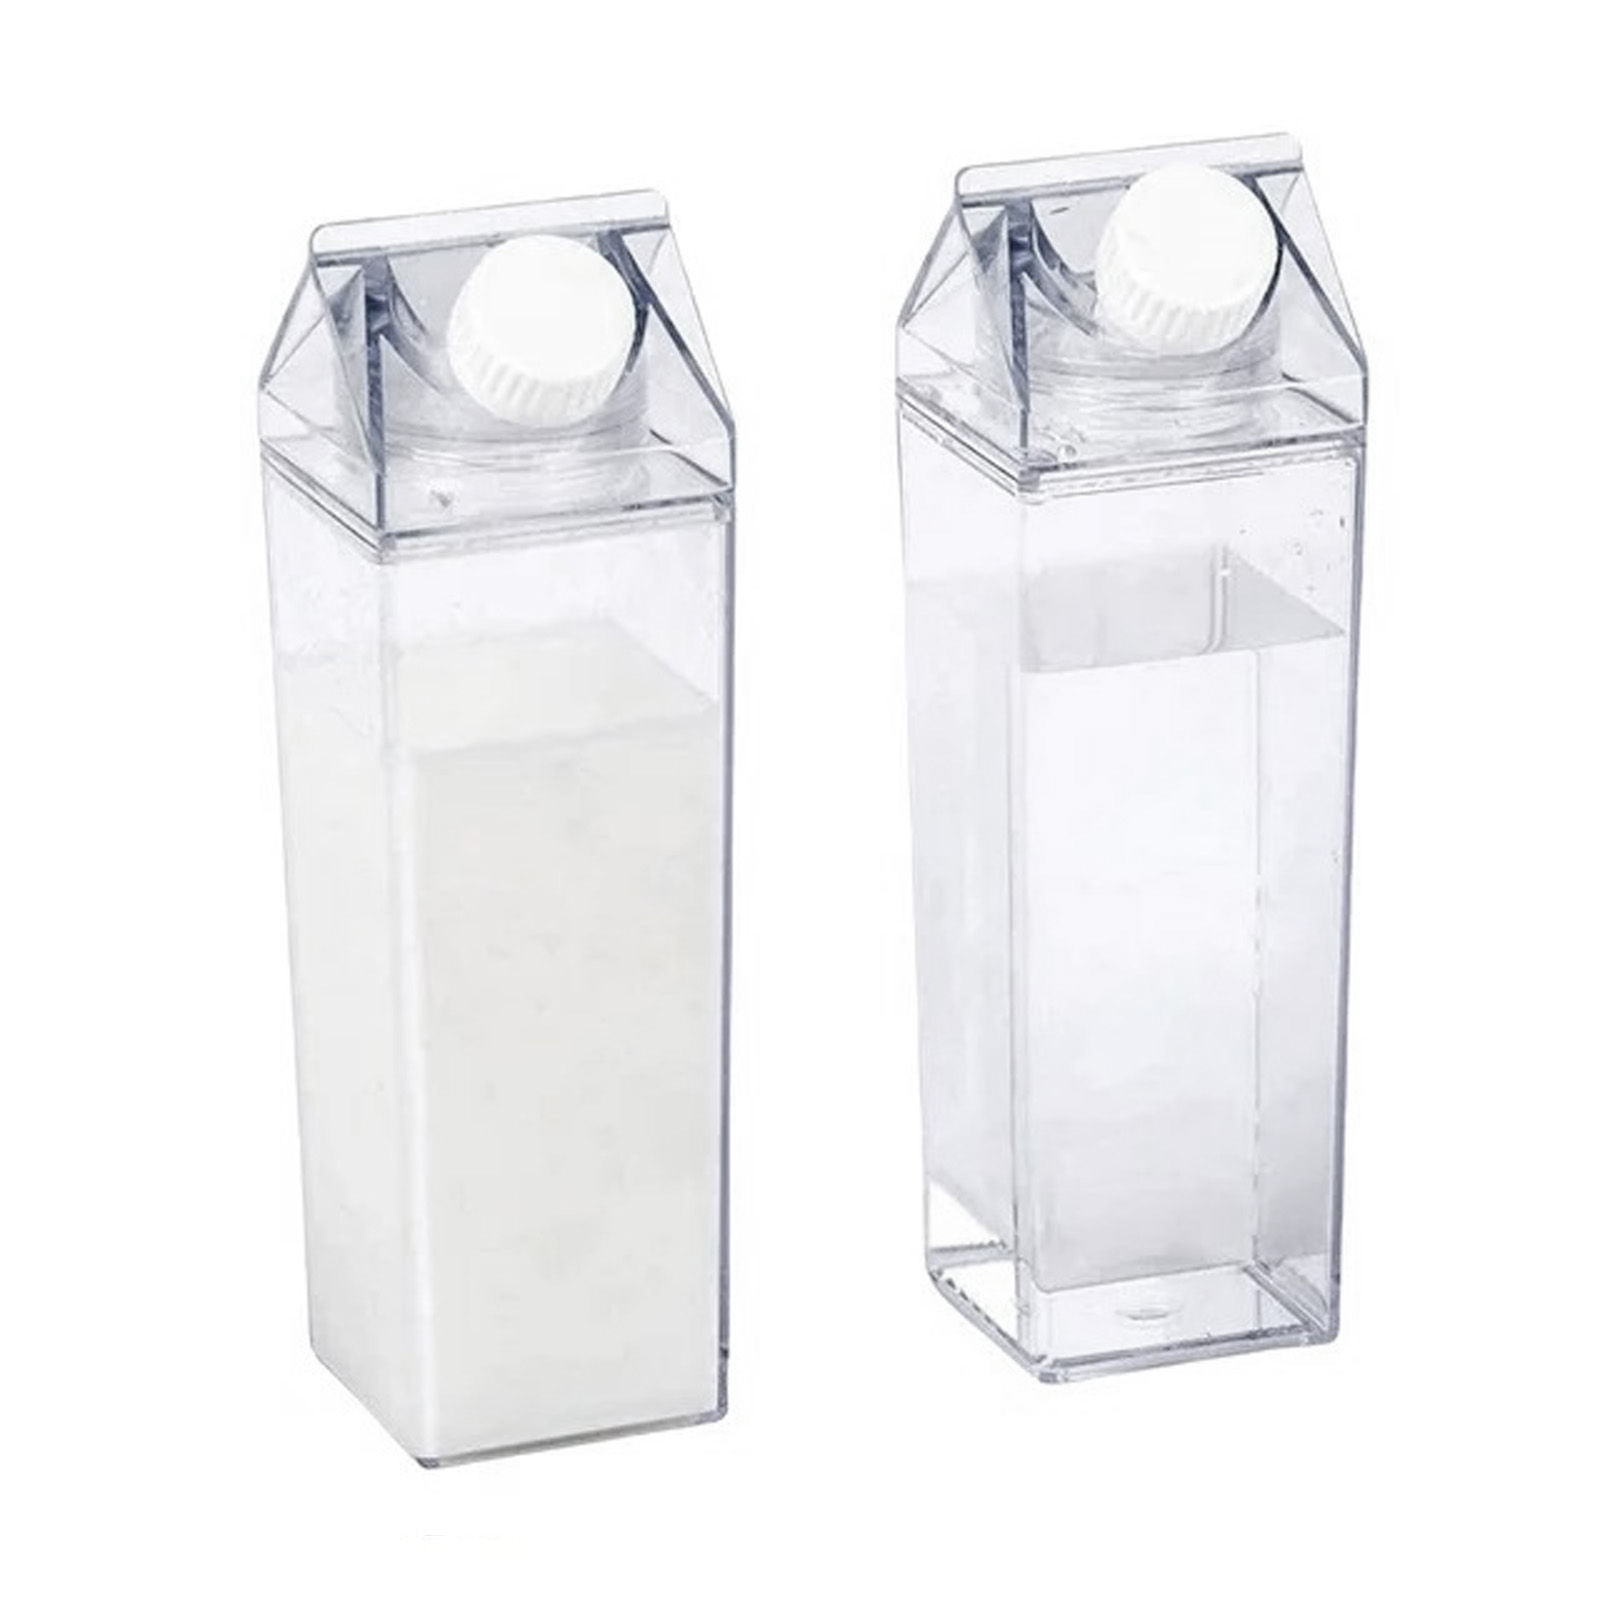 2x Kunststoff Milchflasche 500 ml Transparent Wiederverwendbar Wasserflasche Saftflasche | Milchflasche